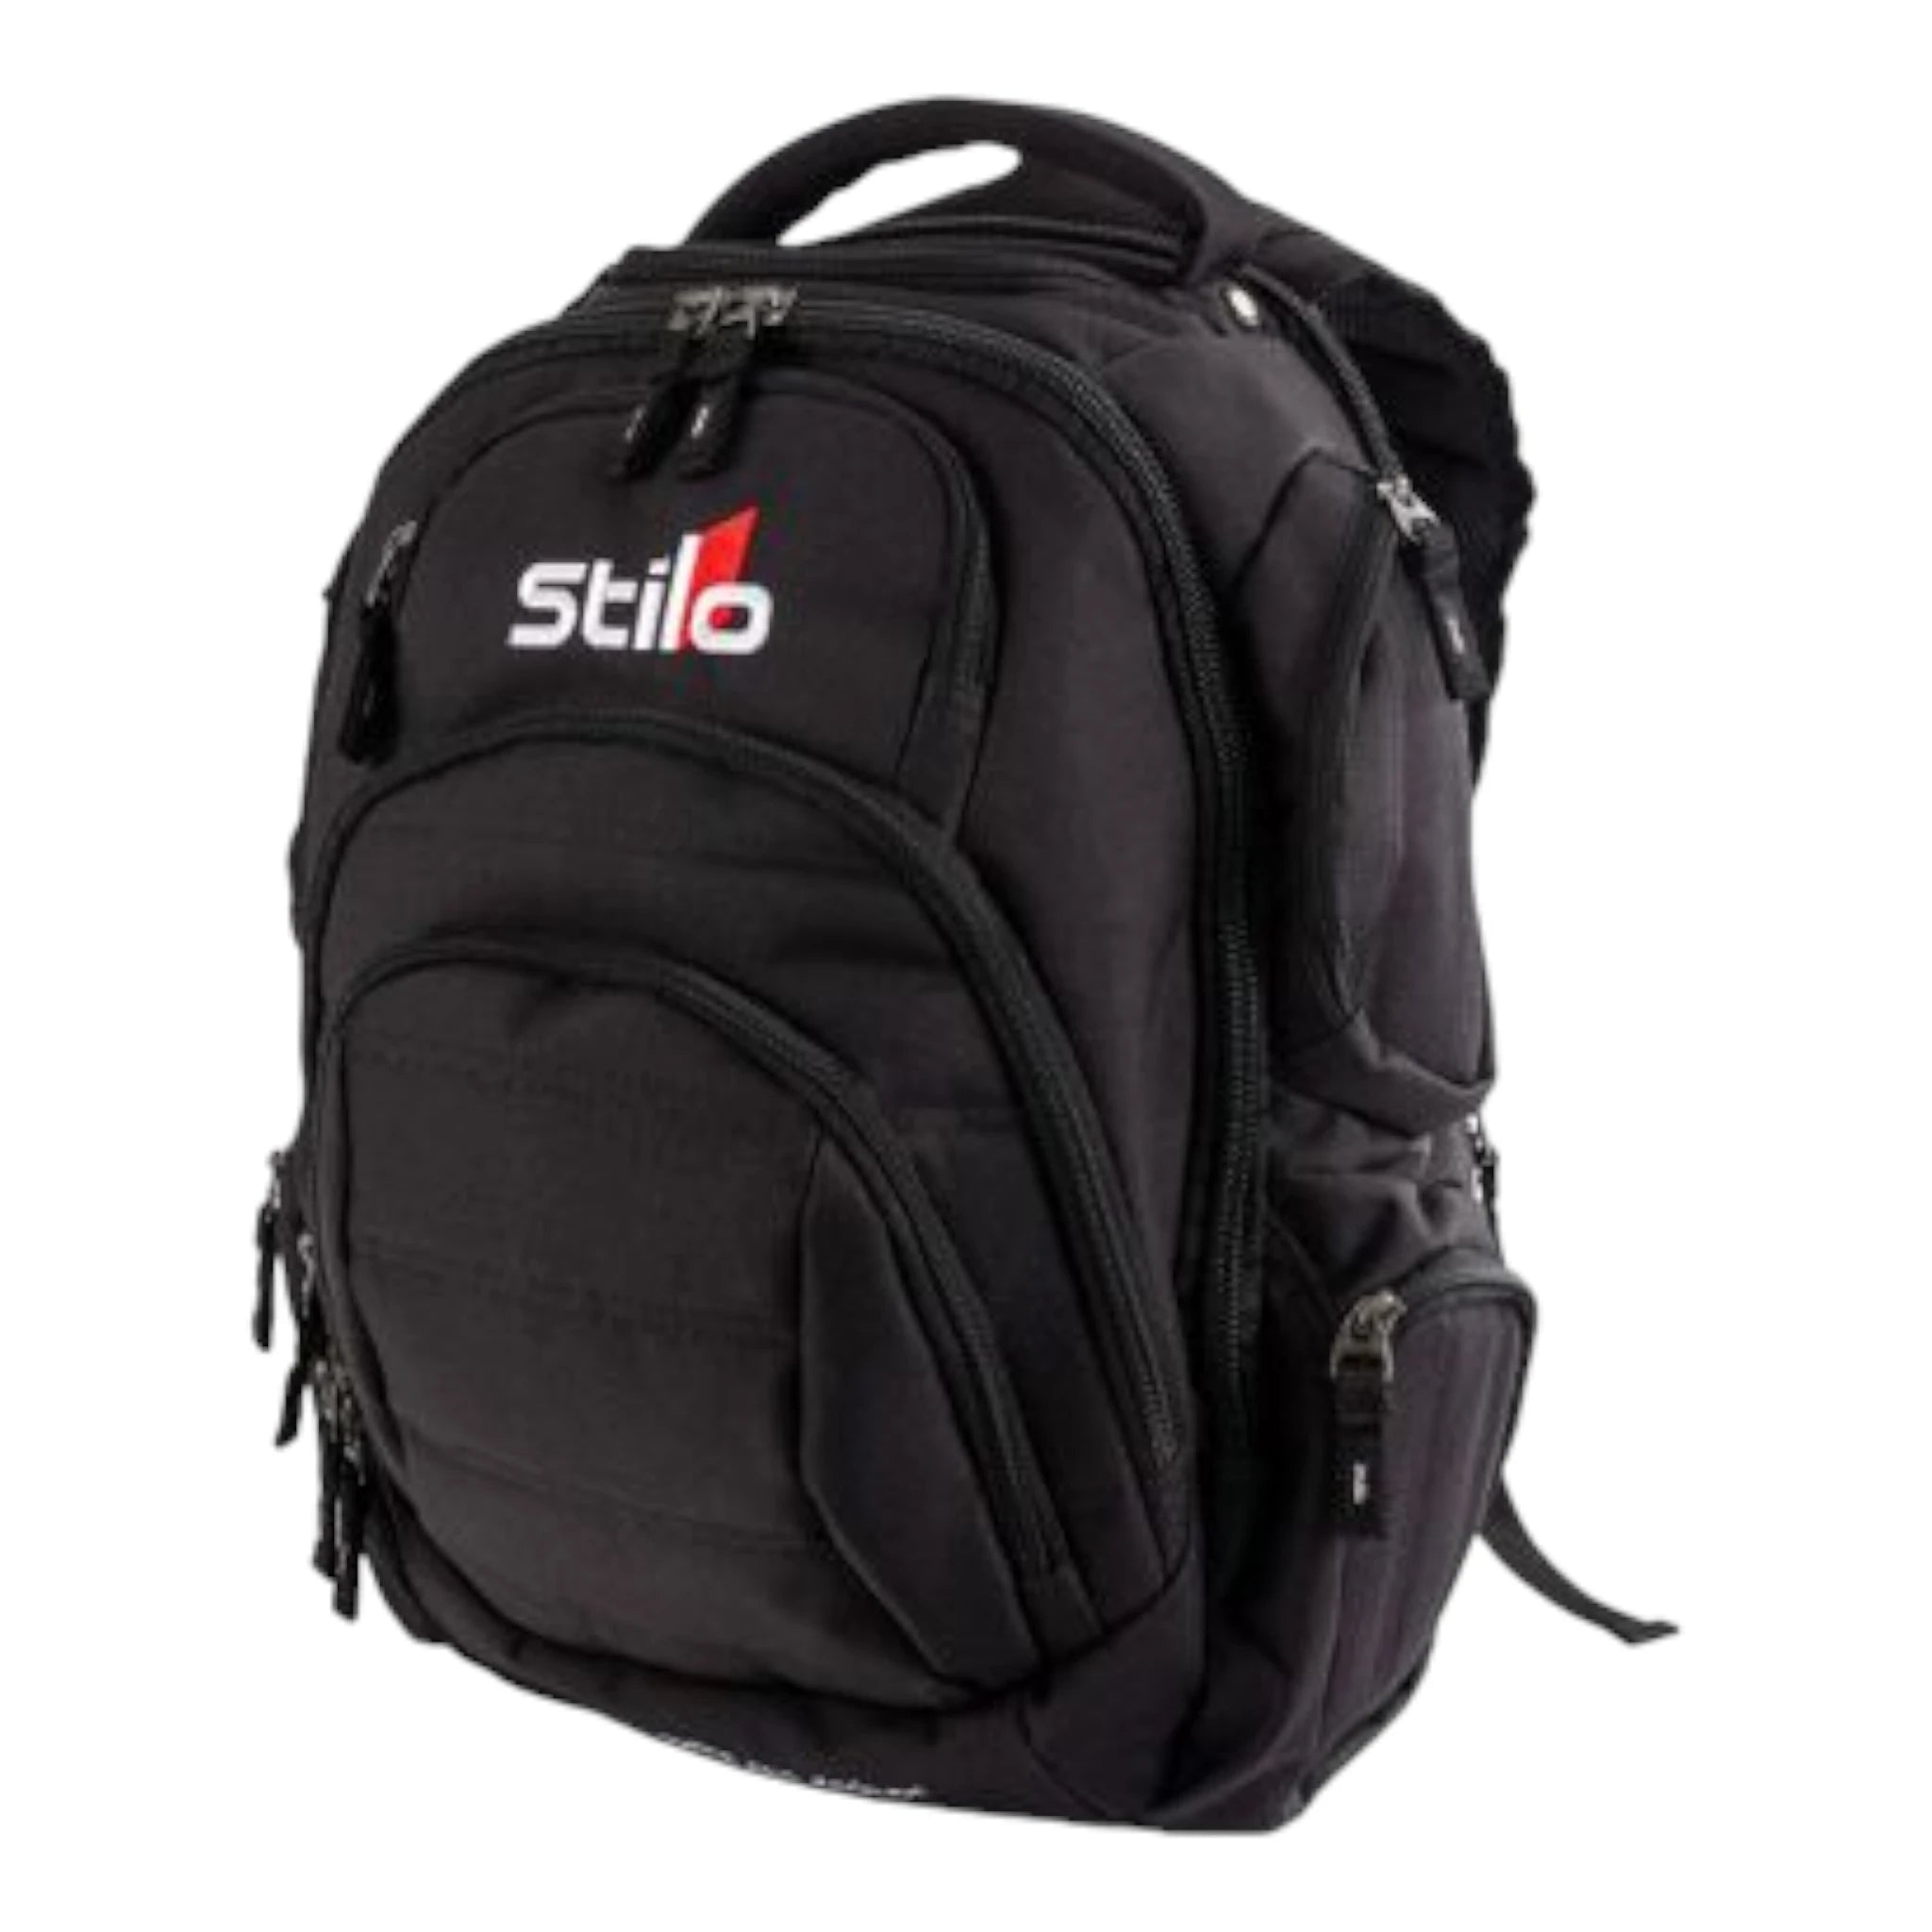 Stilo Backpack